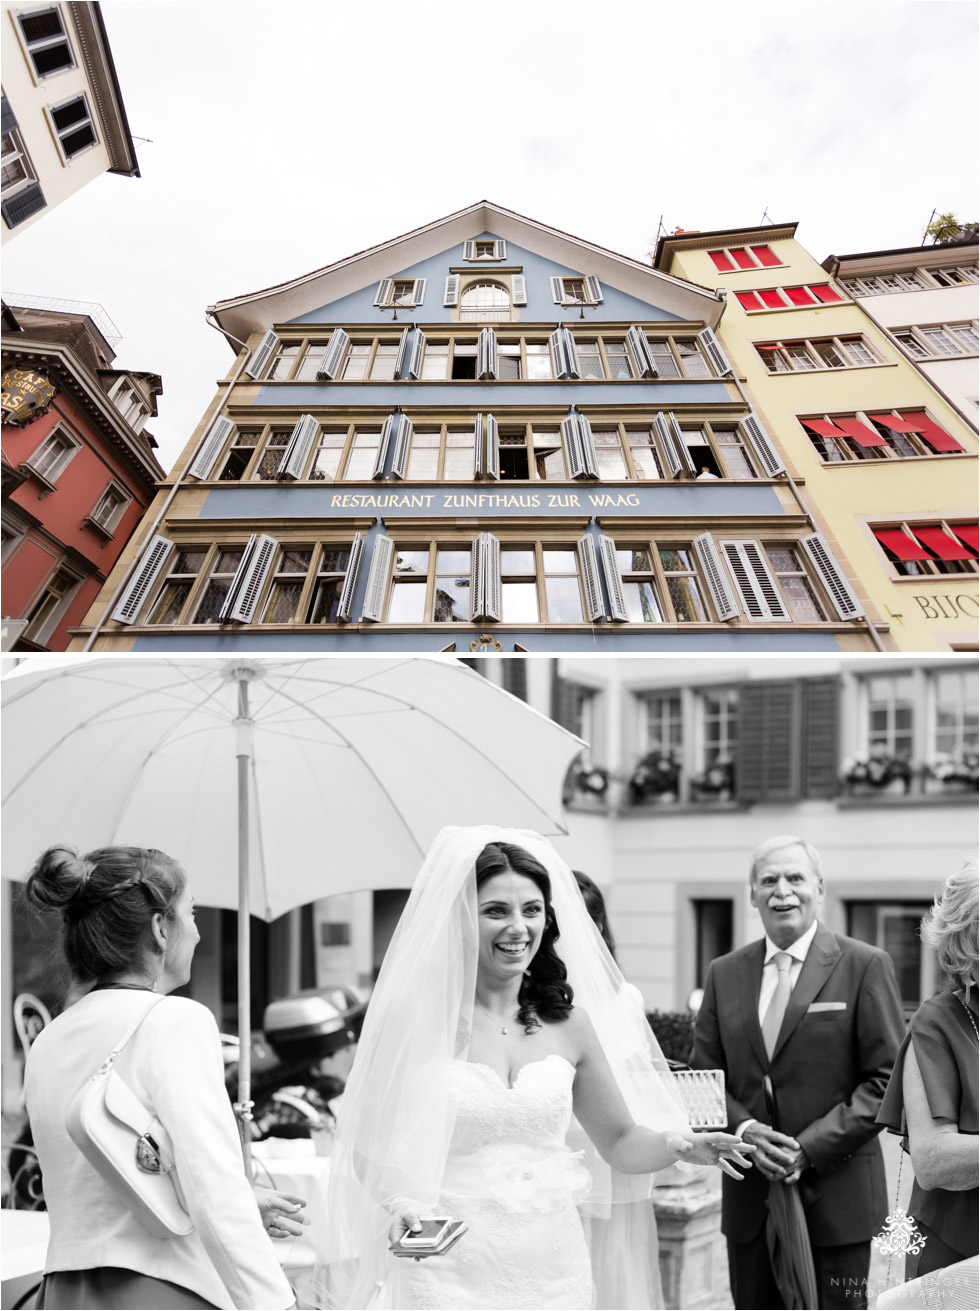 Turkey & USA in Switzerland | Duygu & Bryans International Wedding at Haute | Zurich - Blog of Nina Hintringer Photography - Wedding Photography, Wedding Reportage and Destination Weddings